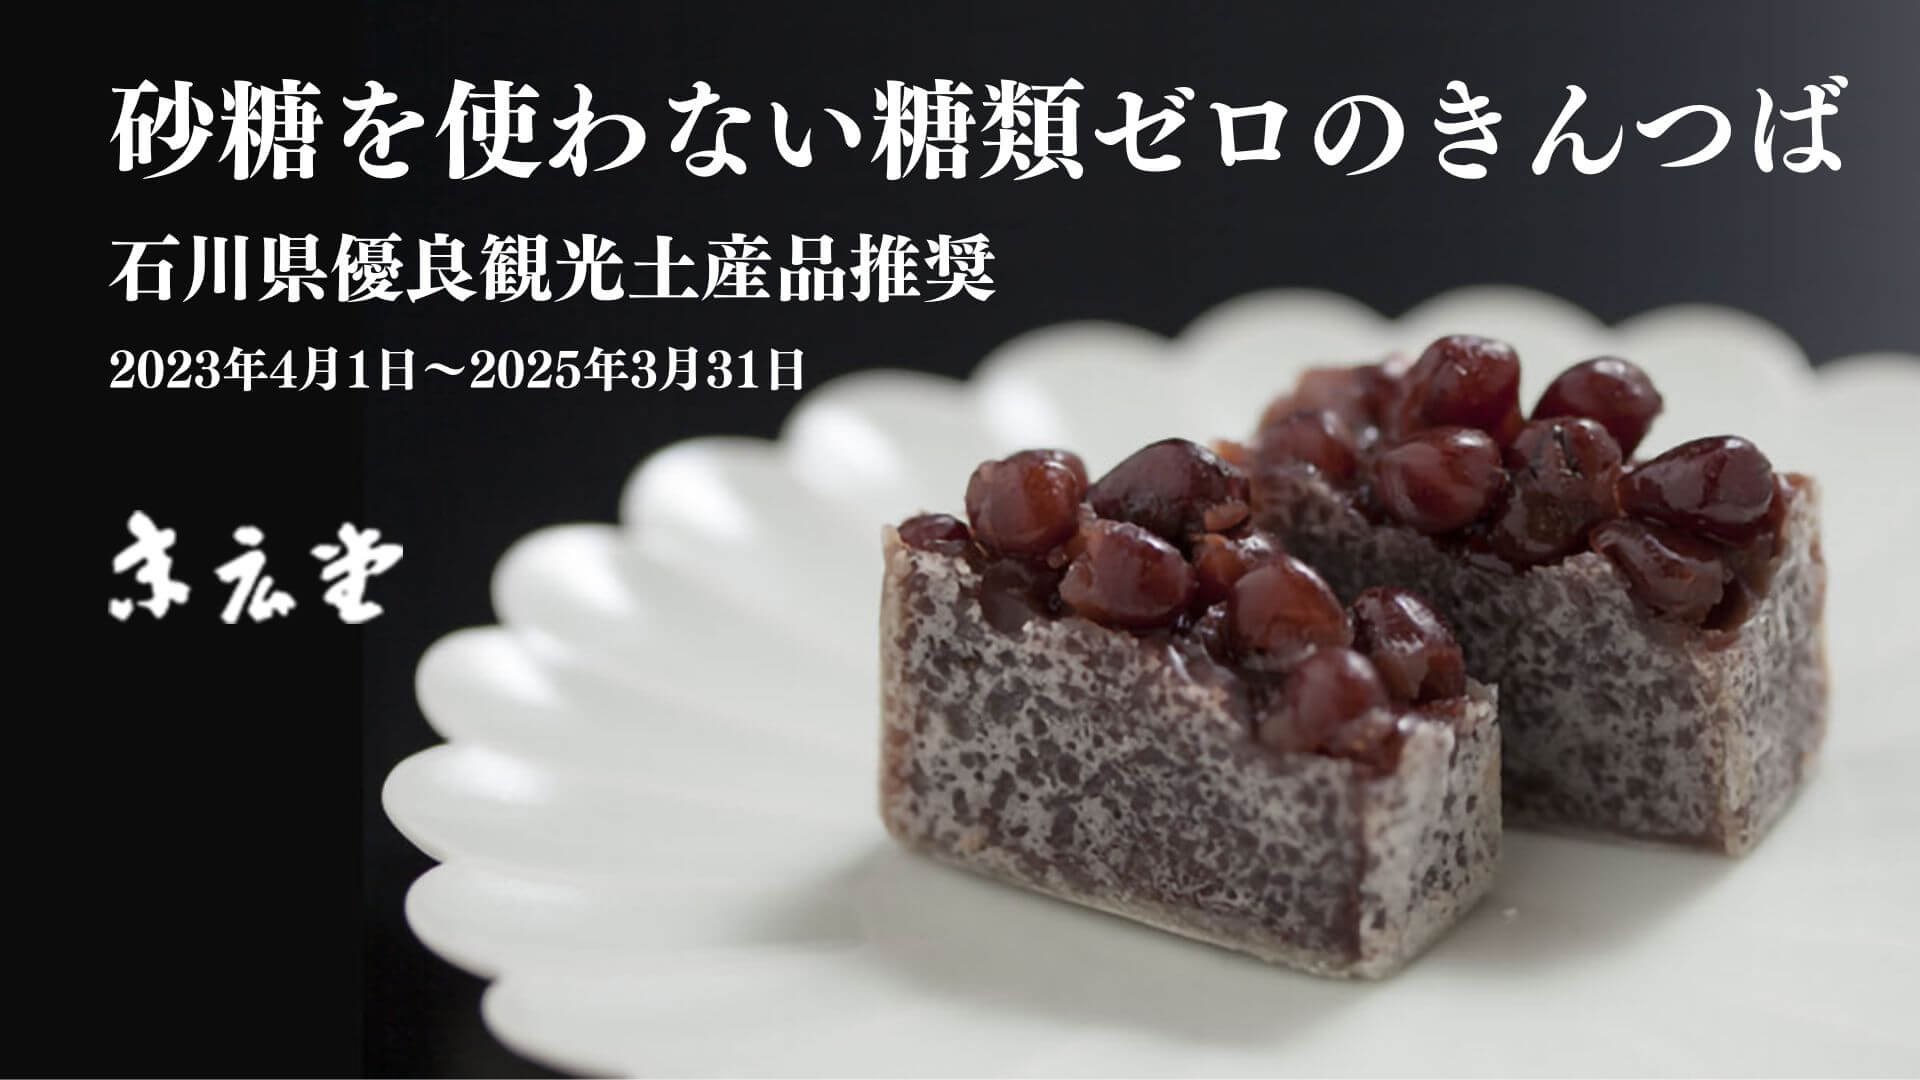 【金沢 末広堂】「砂糖を使わない糖類ゼロのきんつば」が石川県優良観光土産品に推奨されました。